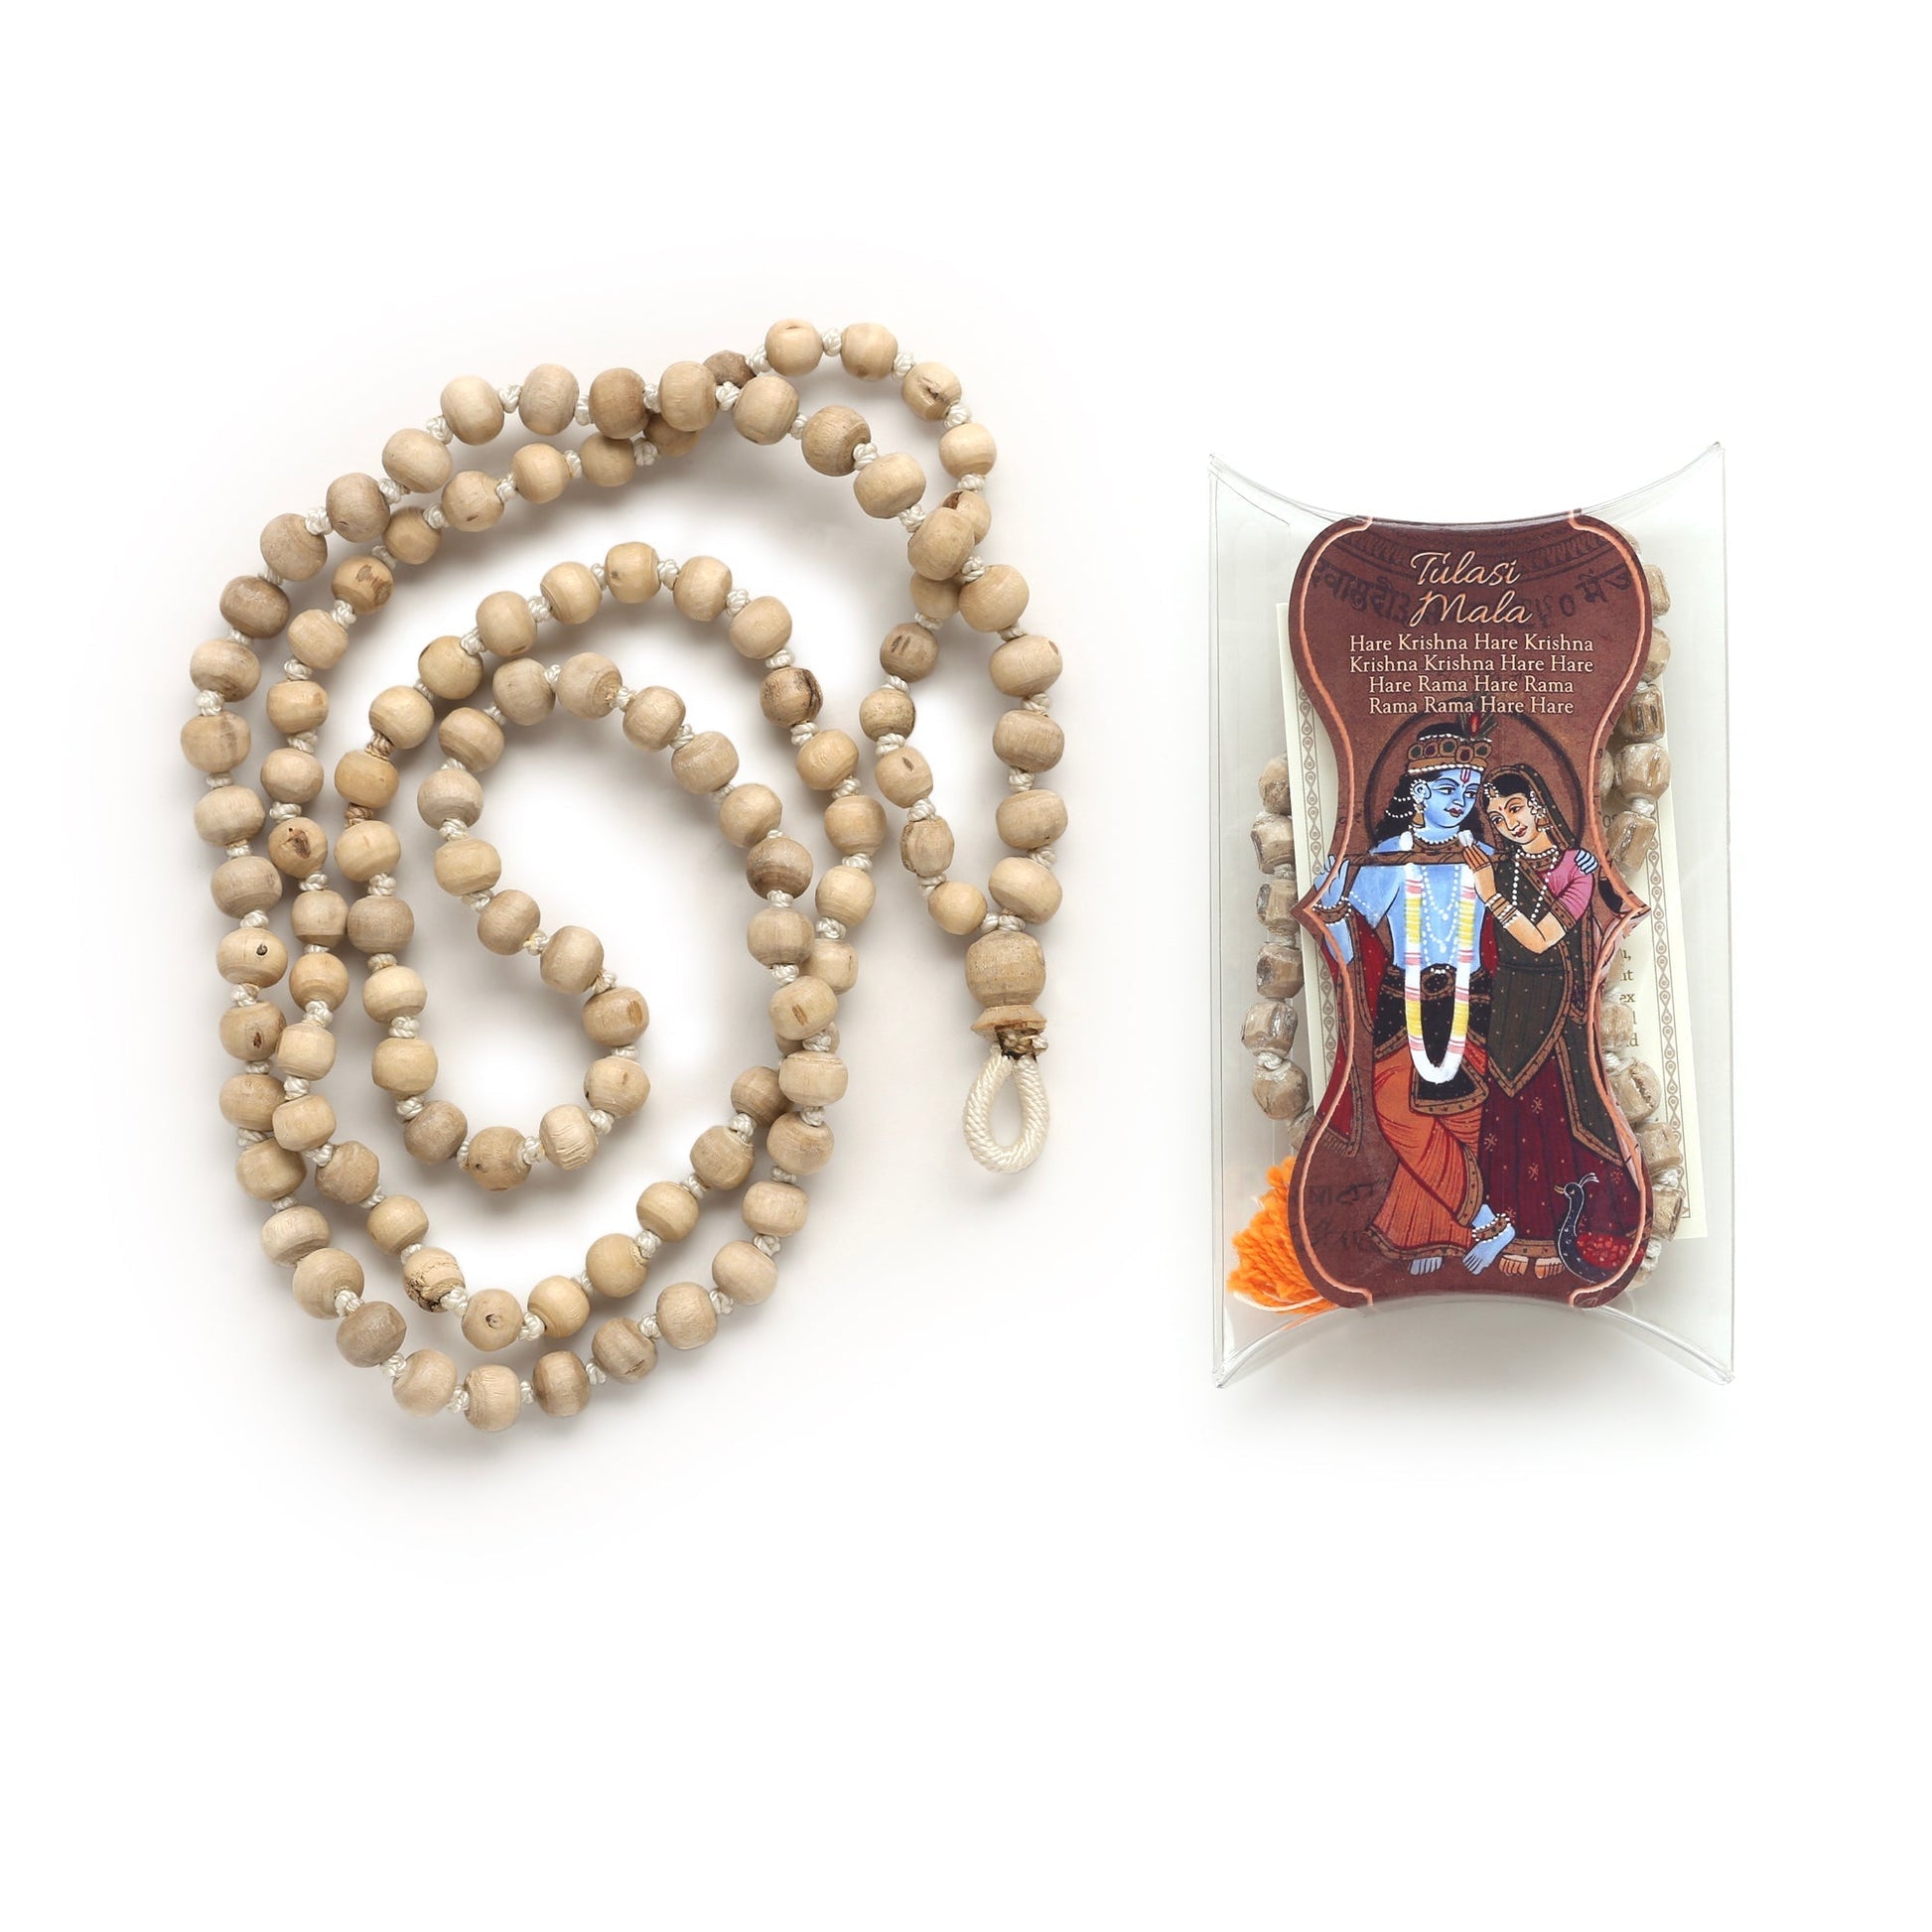 Prayer Mala Beads - Tulasi - 108 Prayer Beads - Tree Spirit Wellness